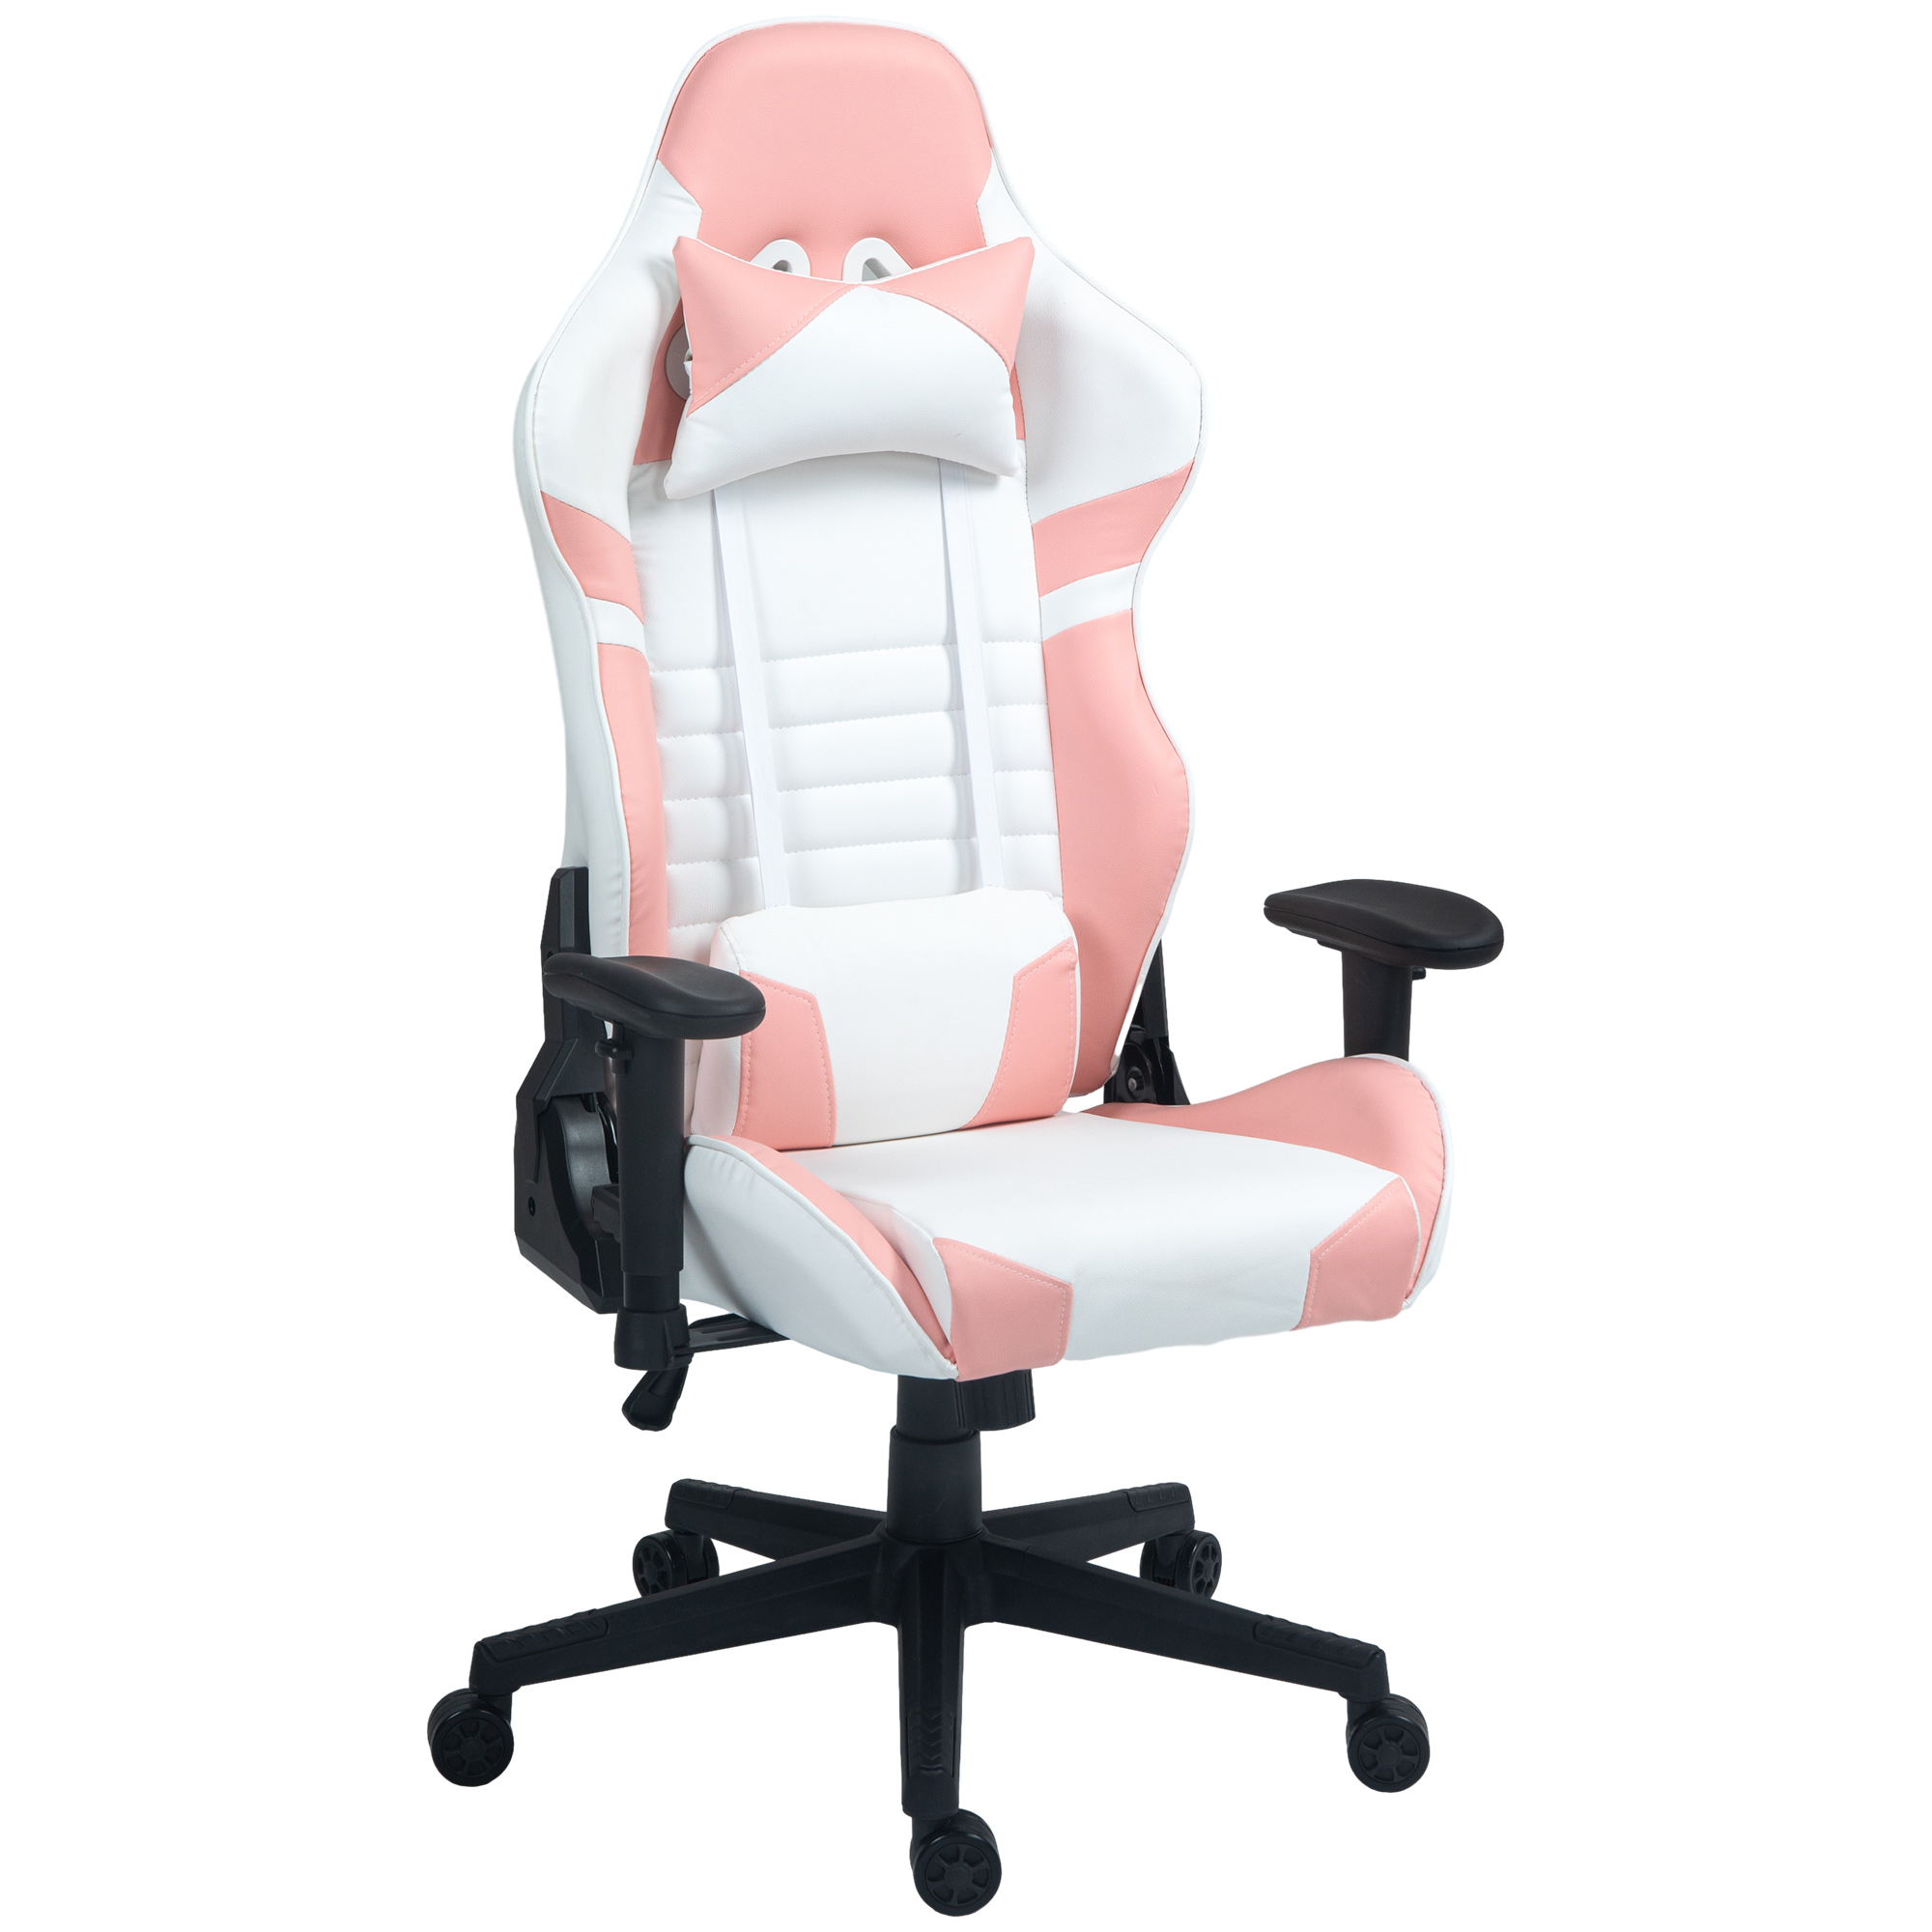 Καρέκλα παιχνιδιών HOMCOM σε ανακλινόμενη από ψεύτικο δέρμα έως 155° με προσκέφαλο και οσφυϊκή υποστήριξη